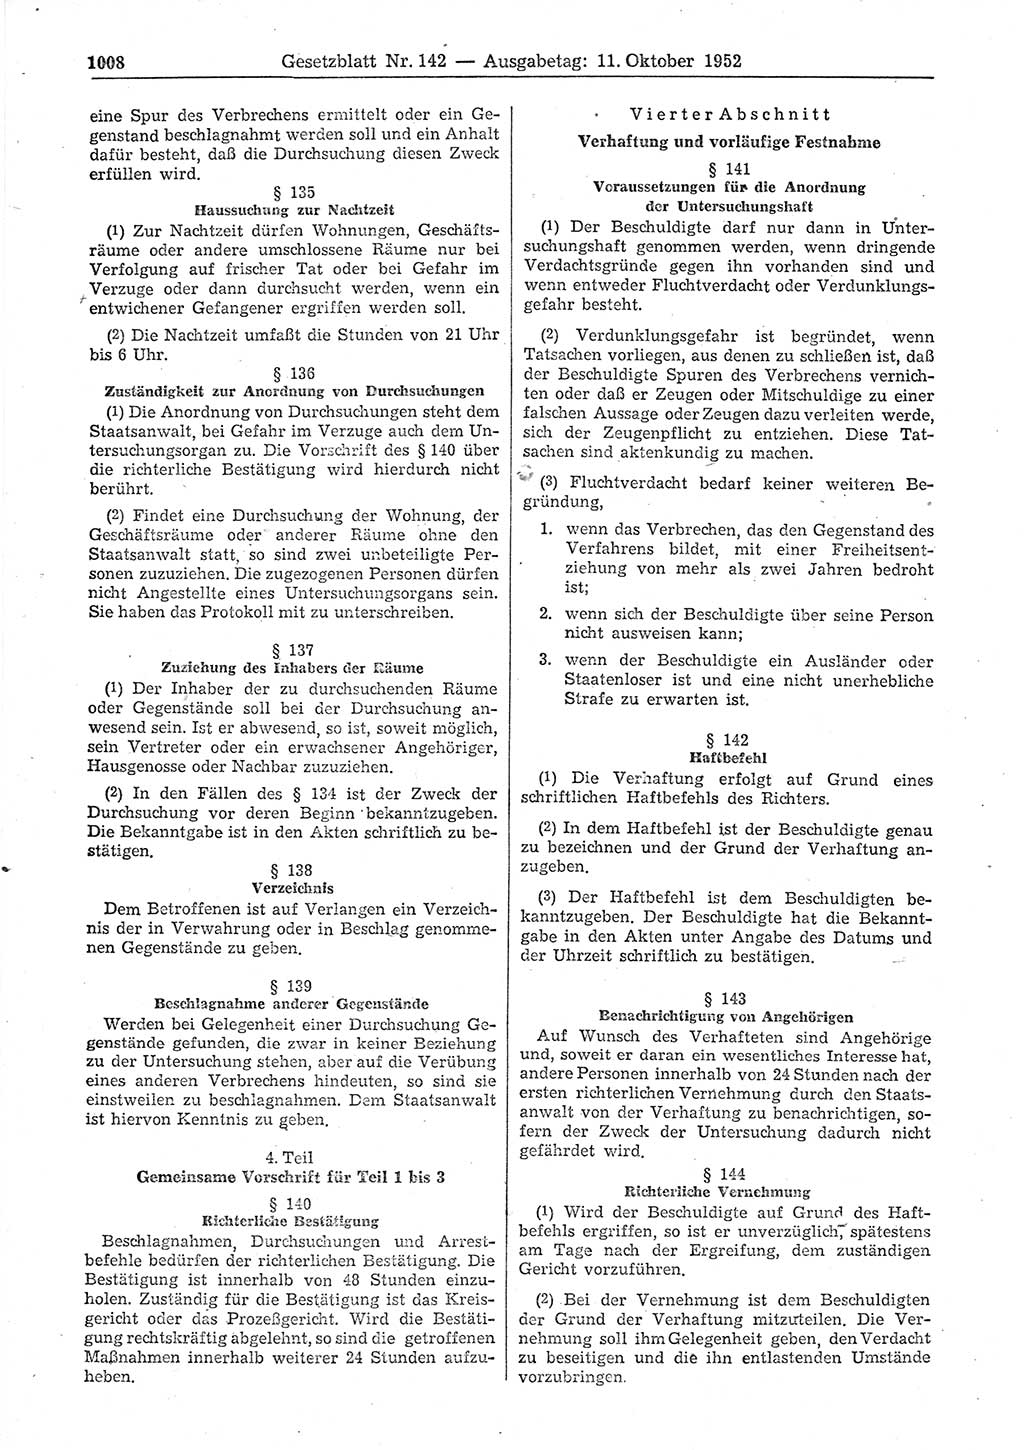 Gesetzblatt (GBl.) der Deutschen Demokratischen Republik (DDR) 1952, Seite 1008 (GBl. DDR 1952, S. 1008)